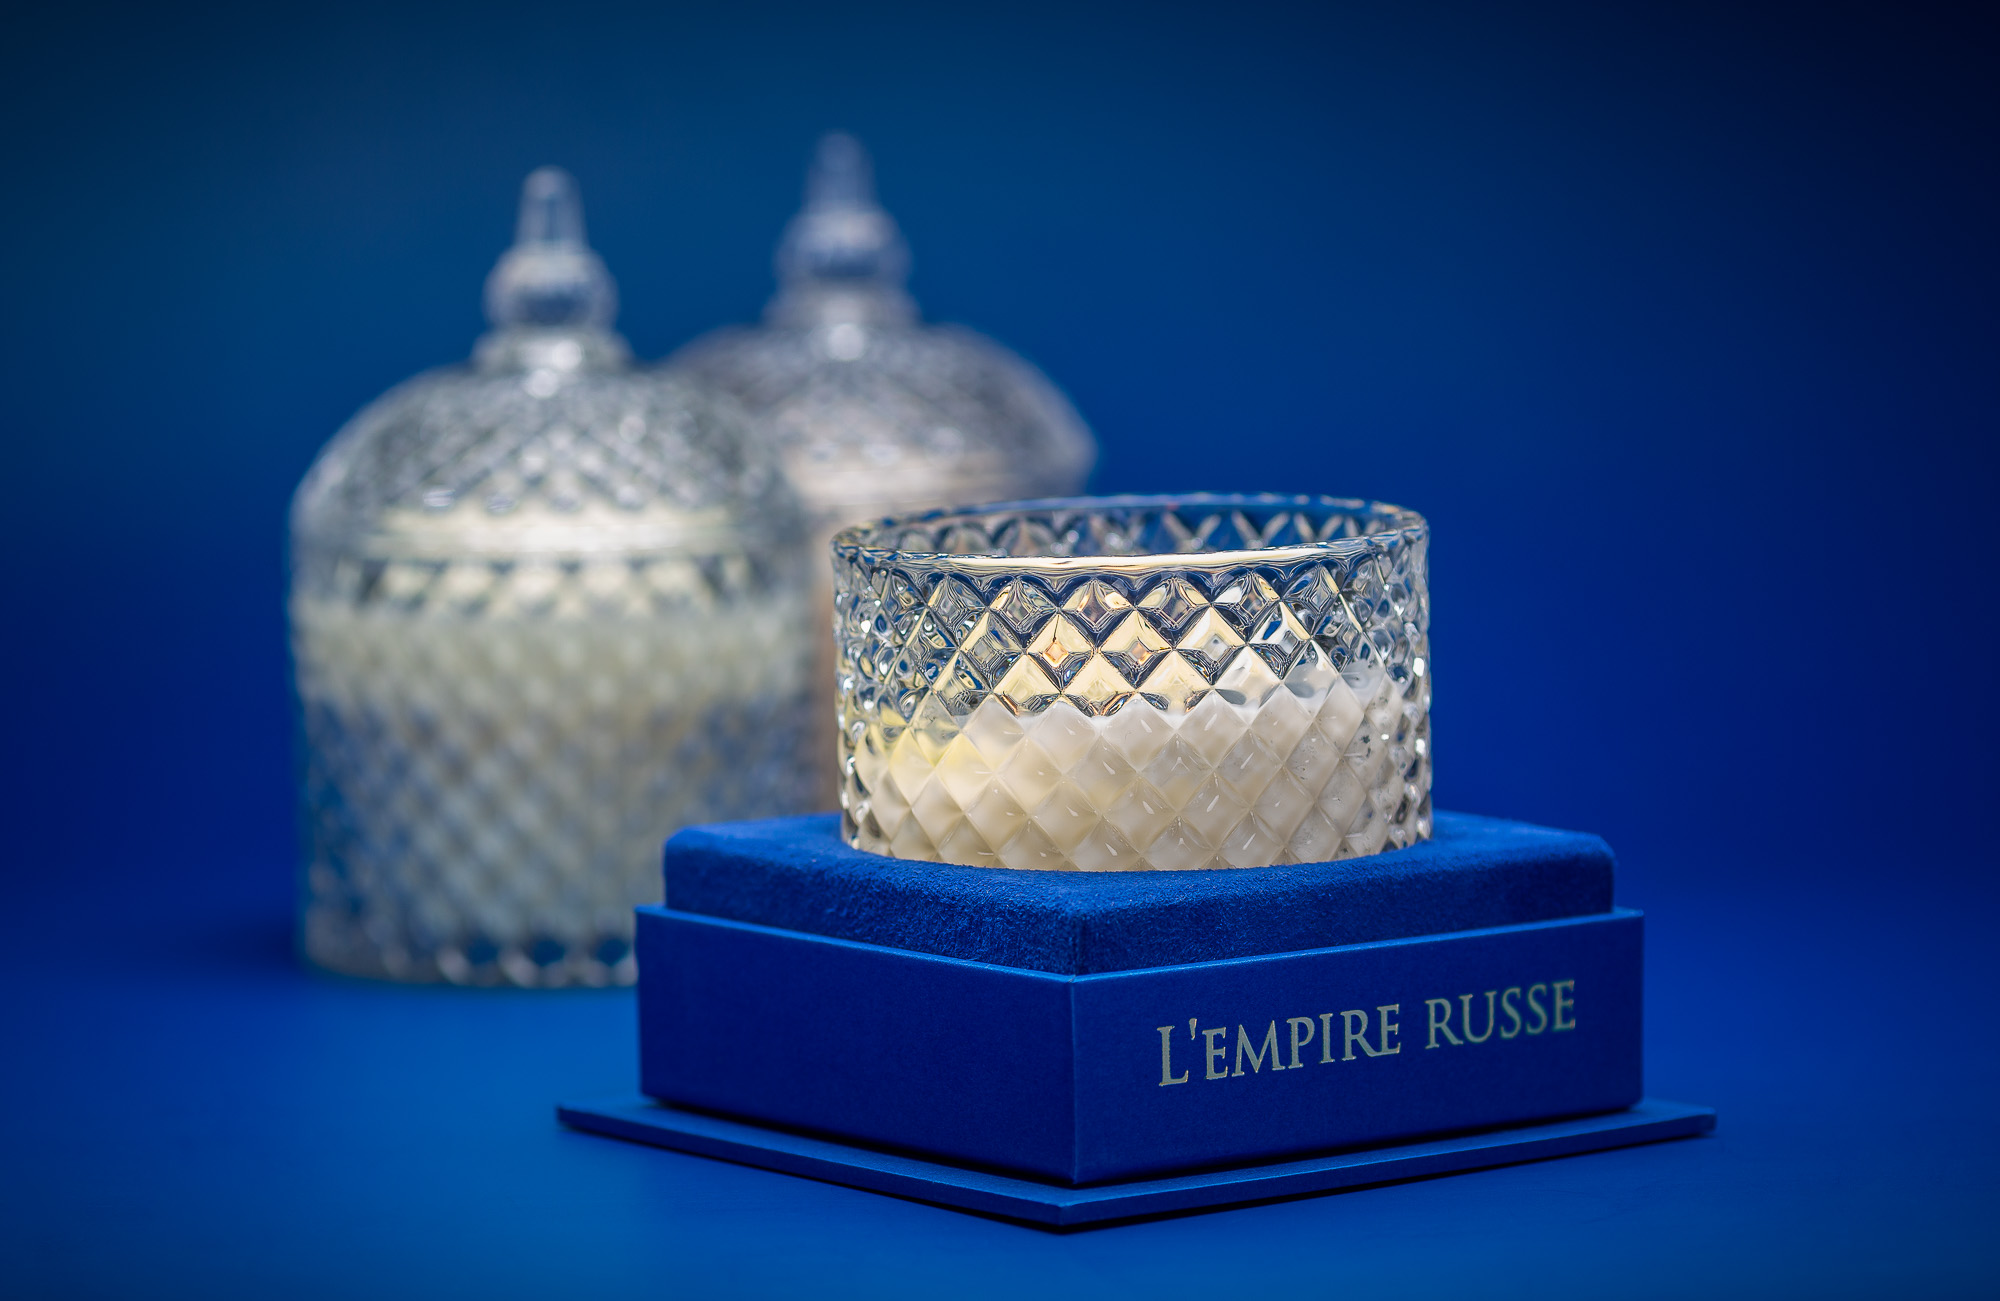  Рекламна фотосъемка ароматических свечей коллекции «L’Empire Russe» от Ателье авторской парфюмерии DLLD. Упаковка